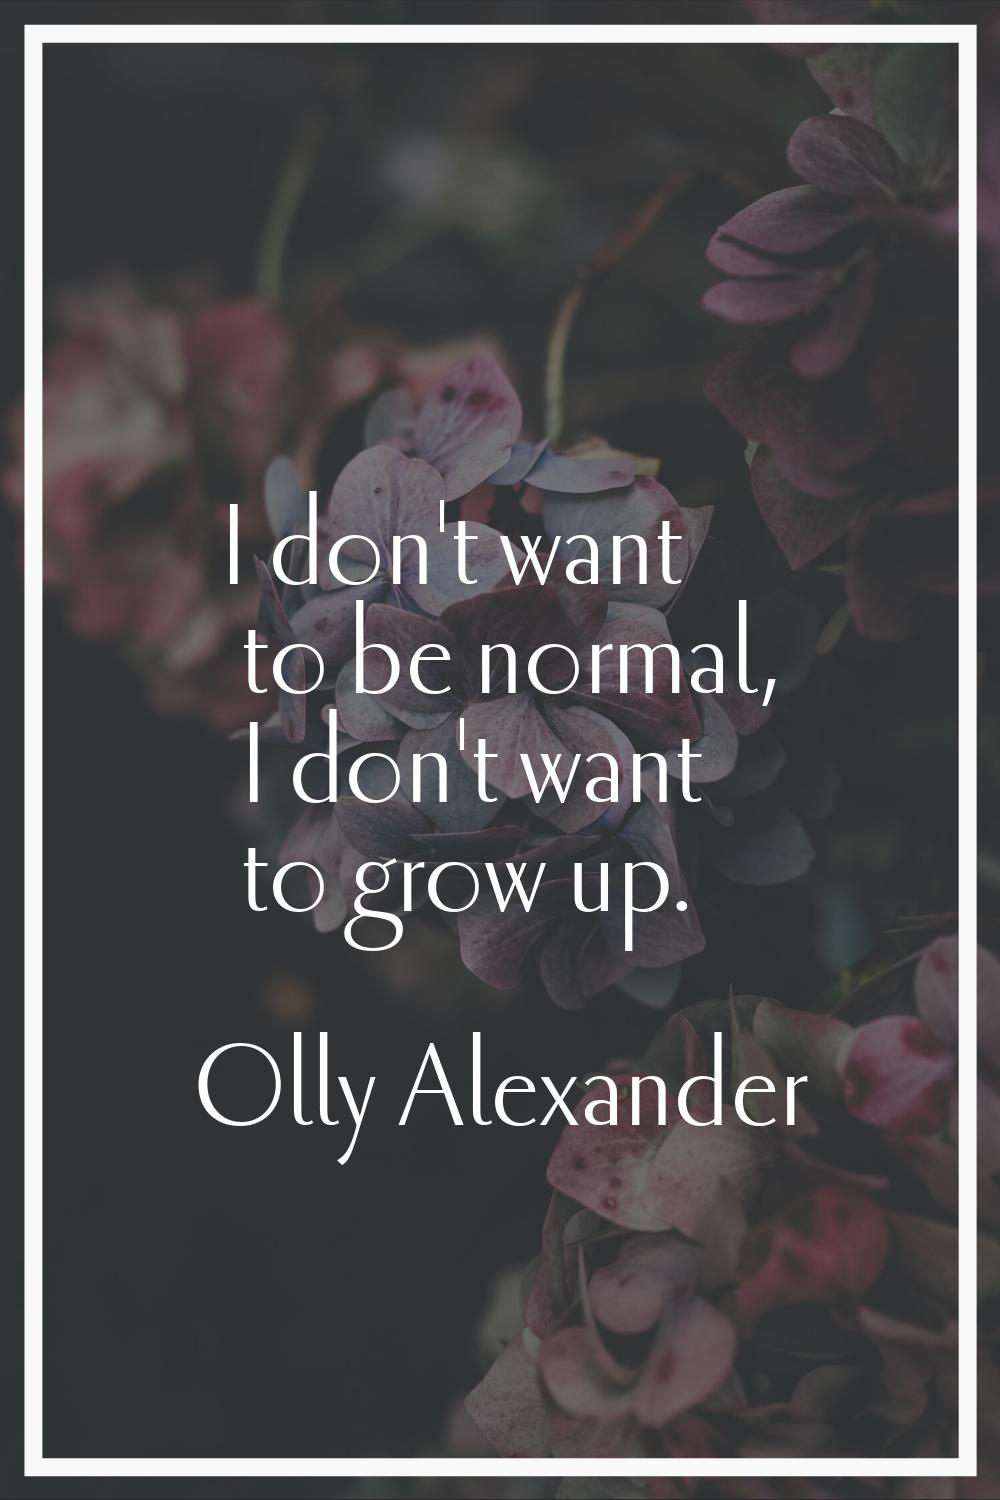 I don't want to be normal, I don't want to grow up.